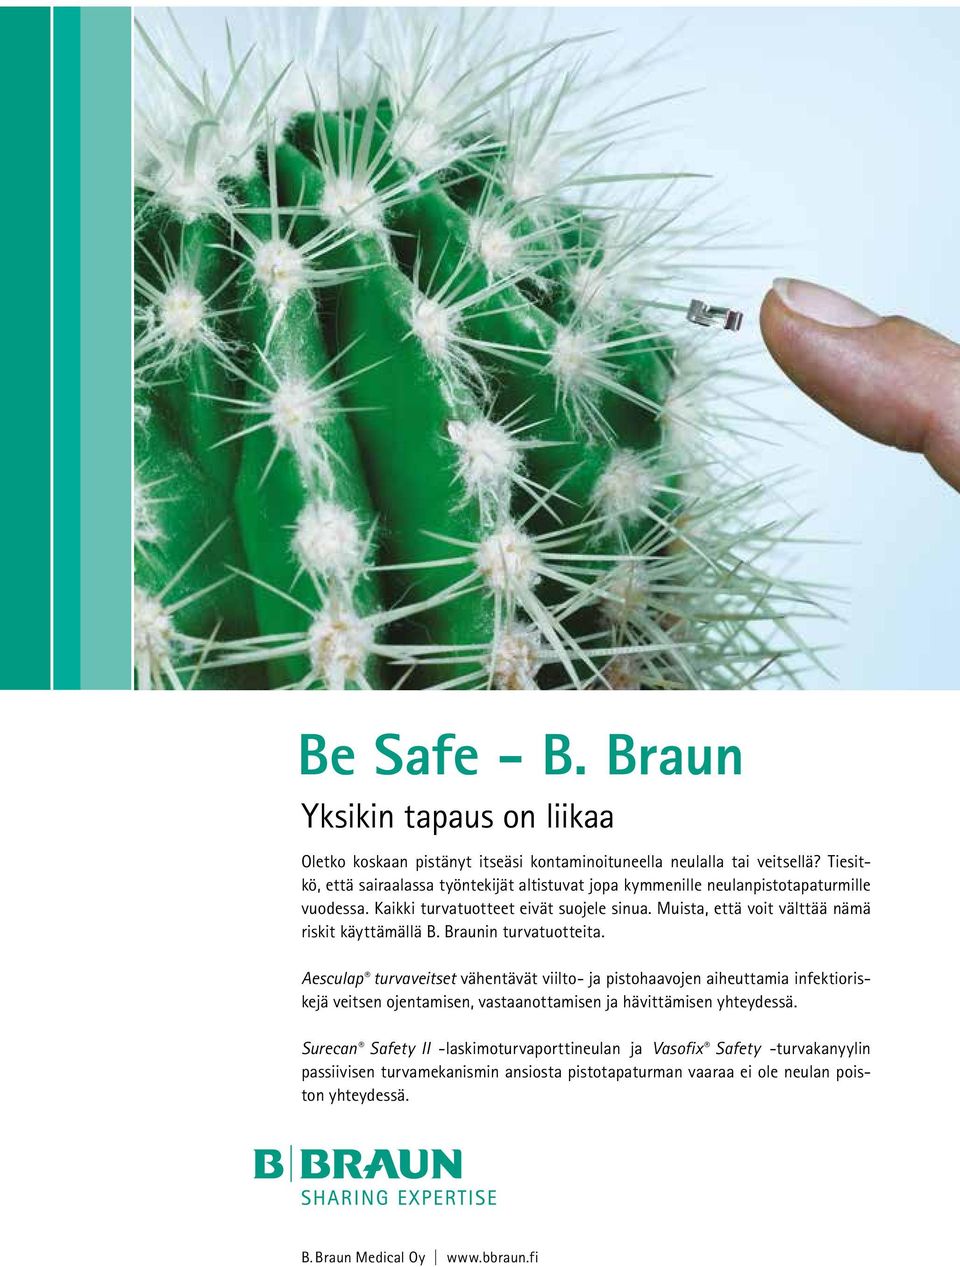 Muista, että voit välttää nämä riskit käyttämällä B. Braunin turvatuotteita.